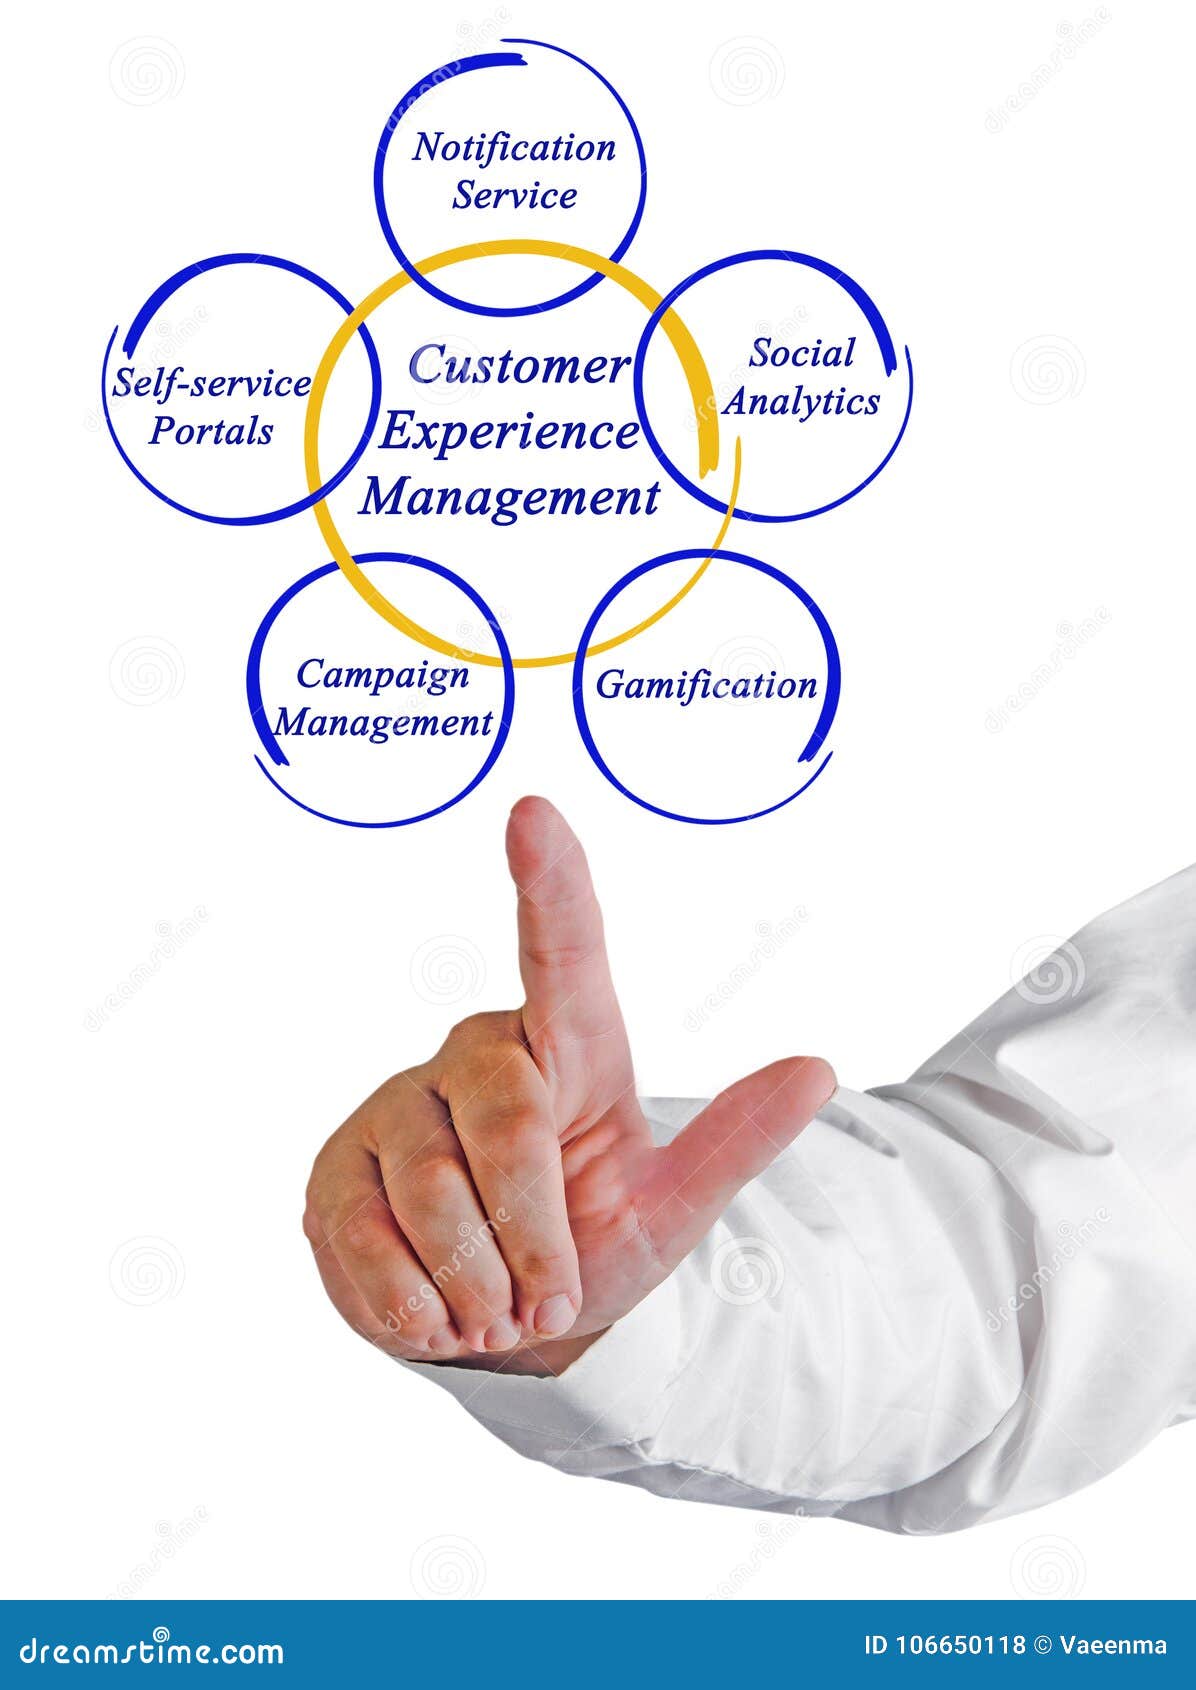 Management experience. Управление клиентским опытом. Консалтинг по управлению клиентским опытом. Аналитика клиентского опыта. Customer experience Management.